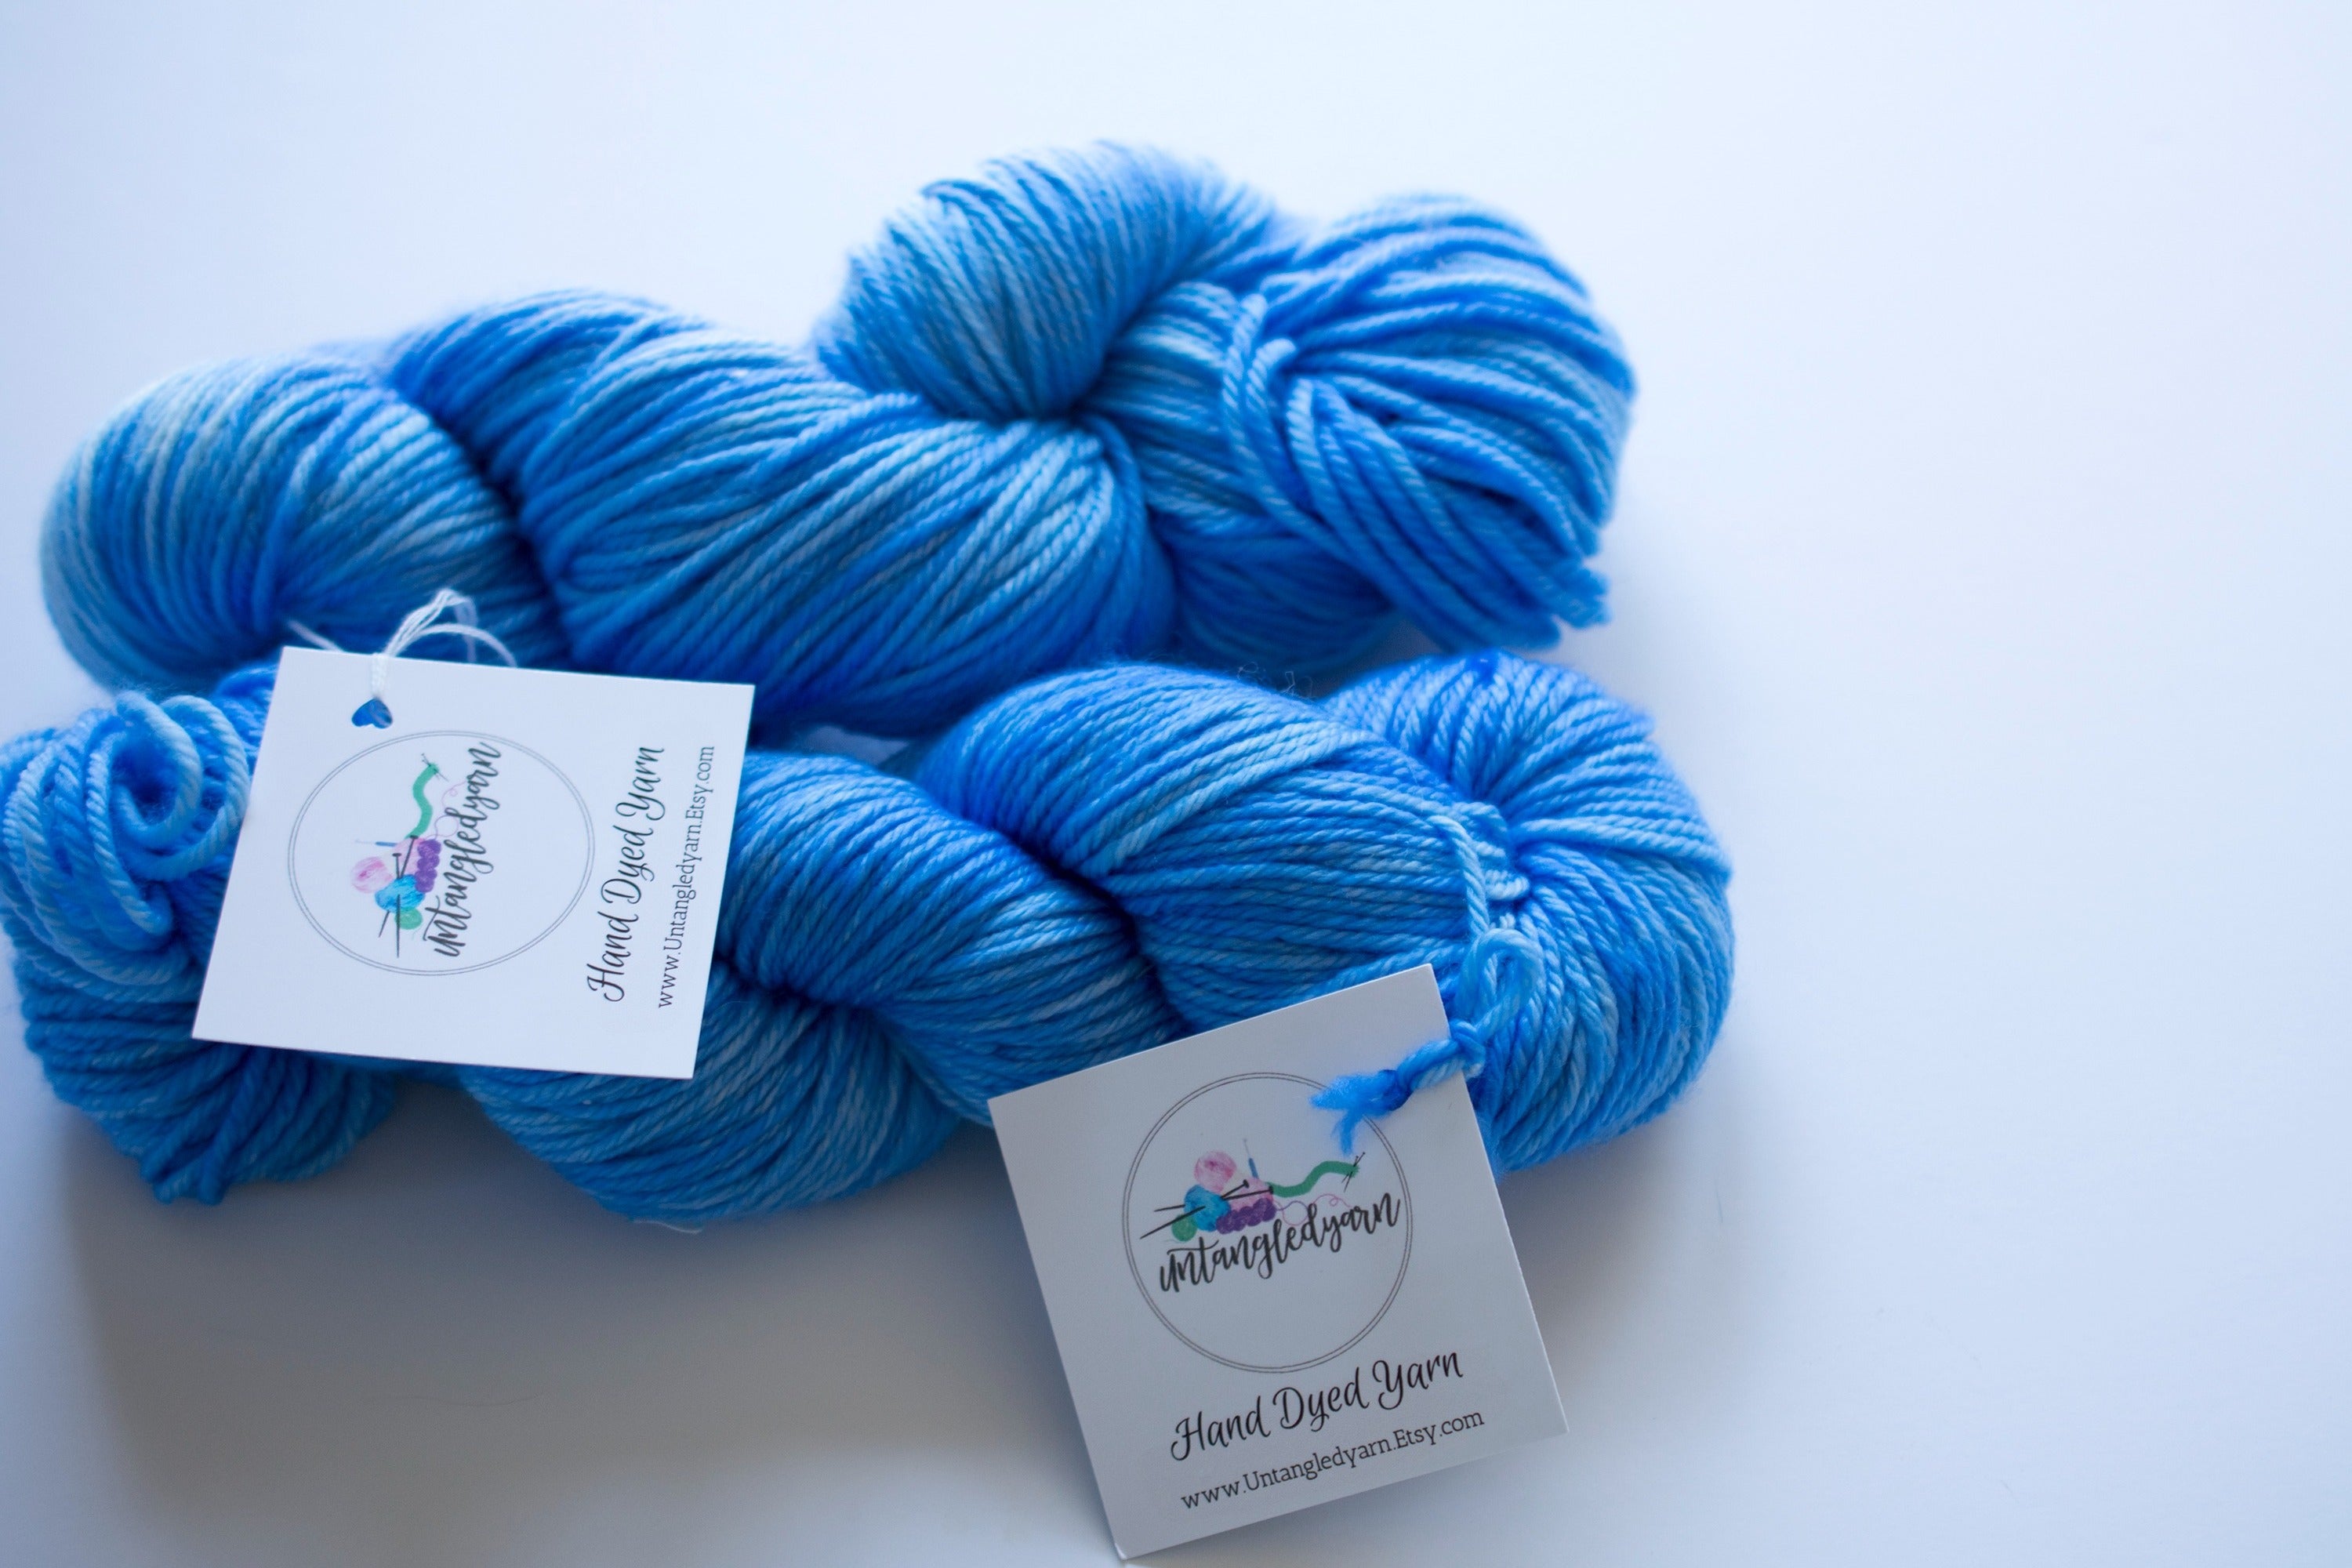 Sip N Stitch Yarn Box - Cratejoy